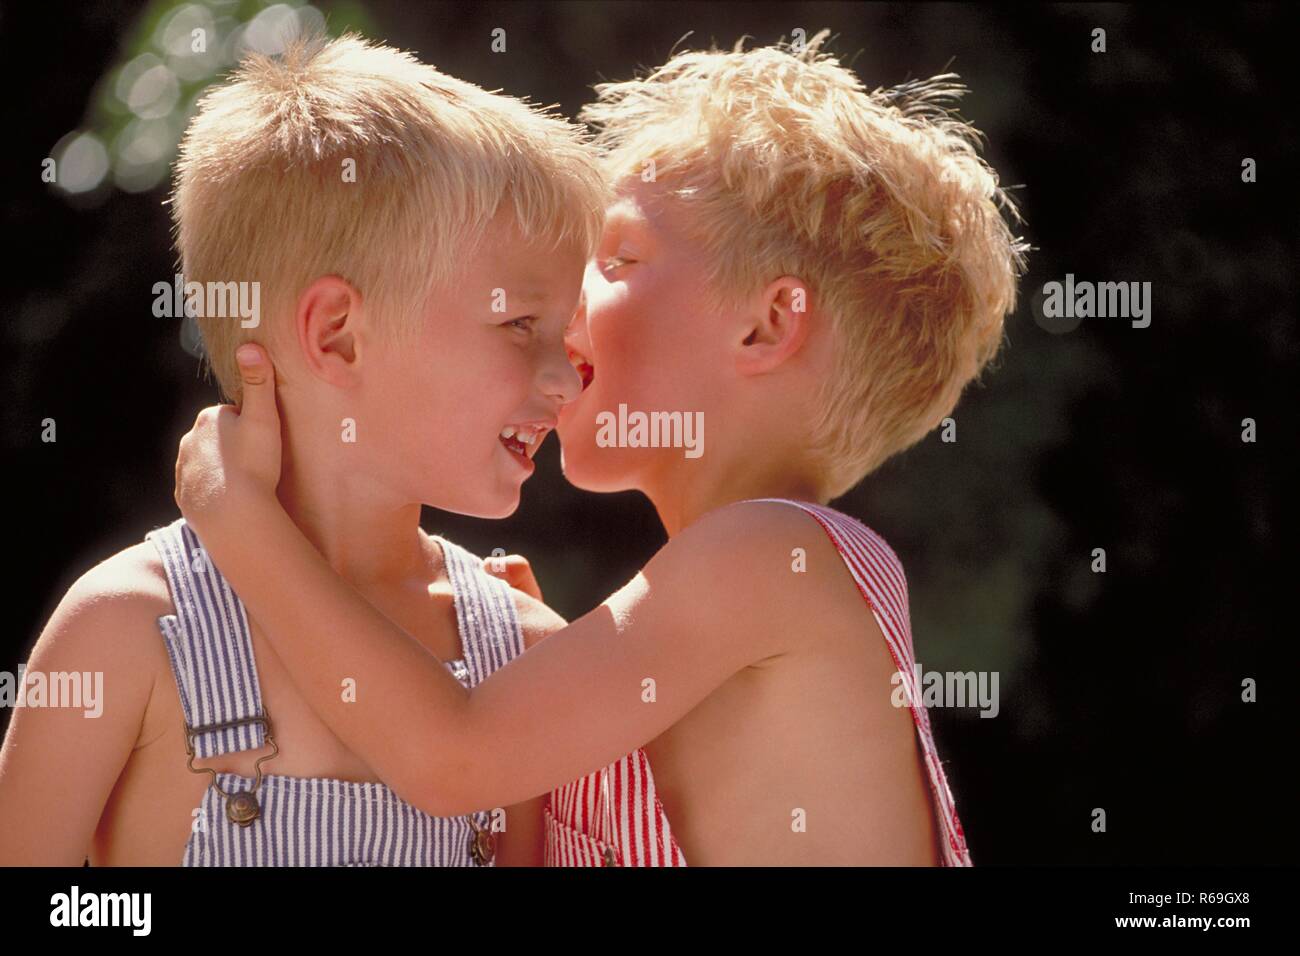 Portrait, Nahaufnahme, zwei 4 Jahre alte Zwillings-Jungen mit kurzen blonden Haaren bekleidet mit blau und rot-weiss gestreiften Latzhosen unterhalten sich in inniger Umarmung Stock Photo